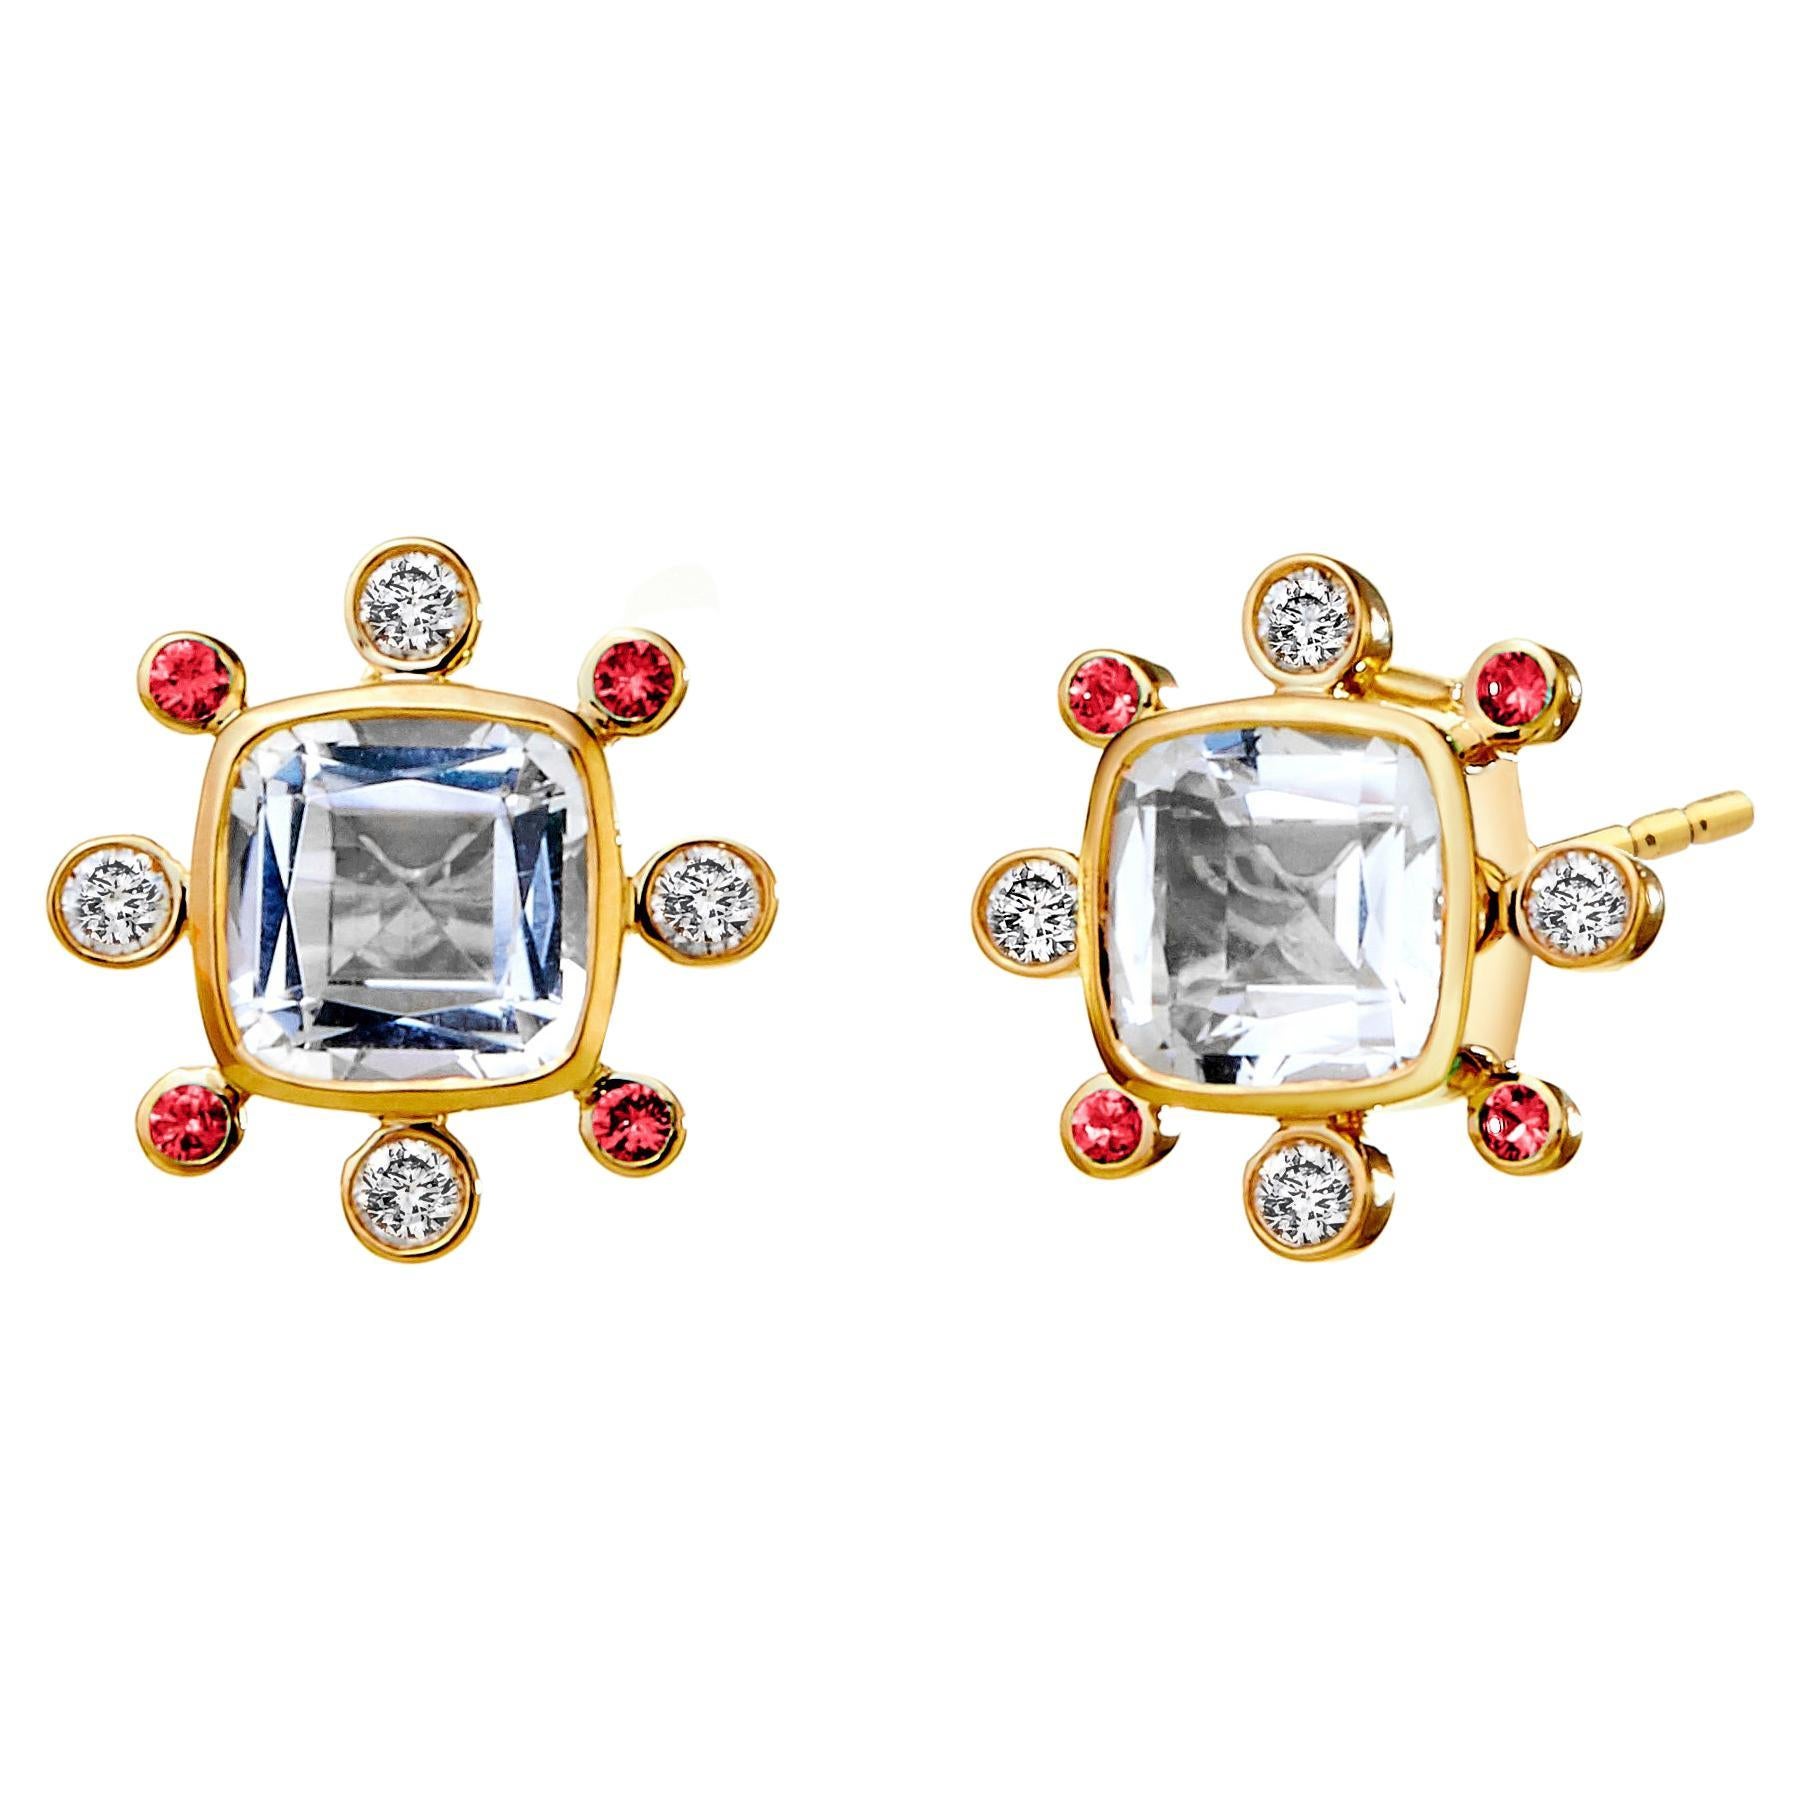 Syna Gelbgold Bergkristall-Ohrringe mit Rubinen und Diamanten